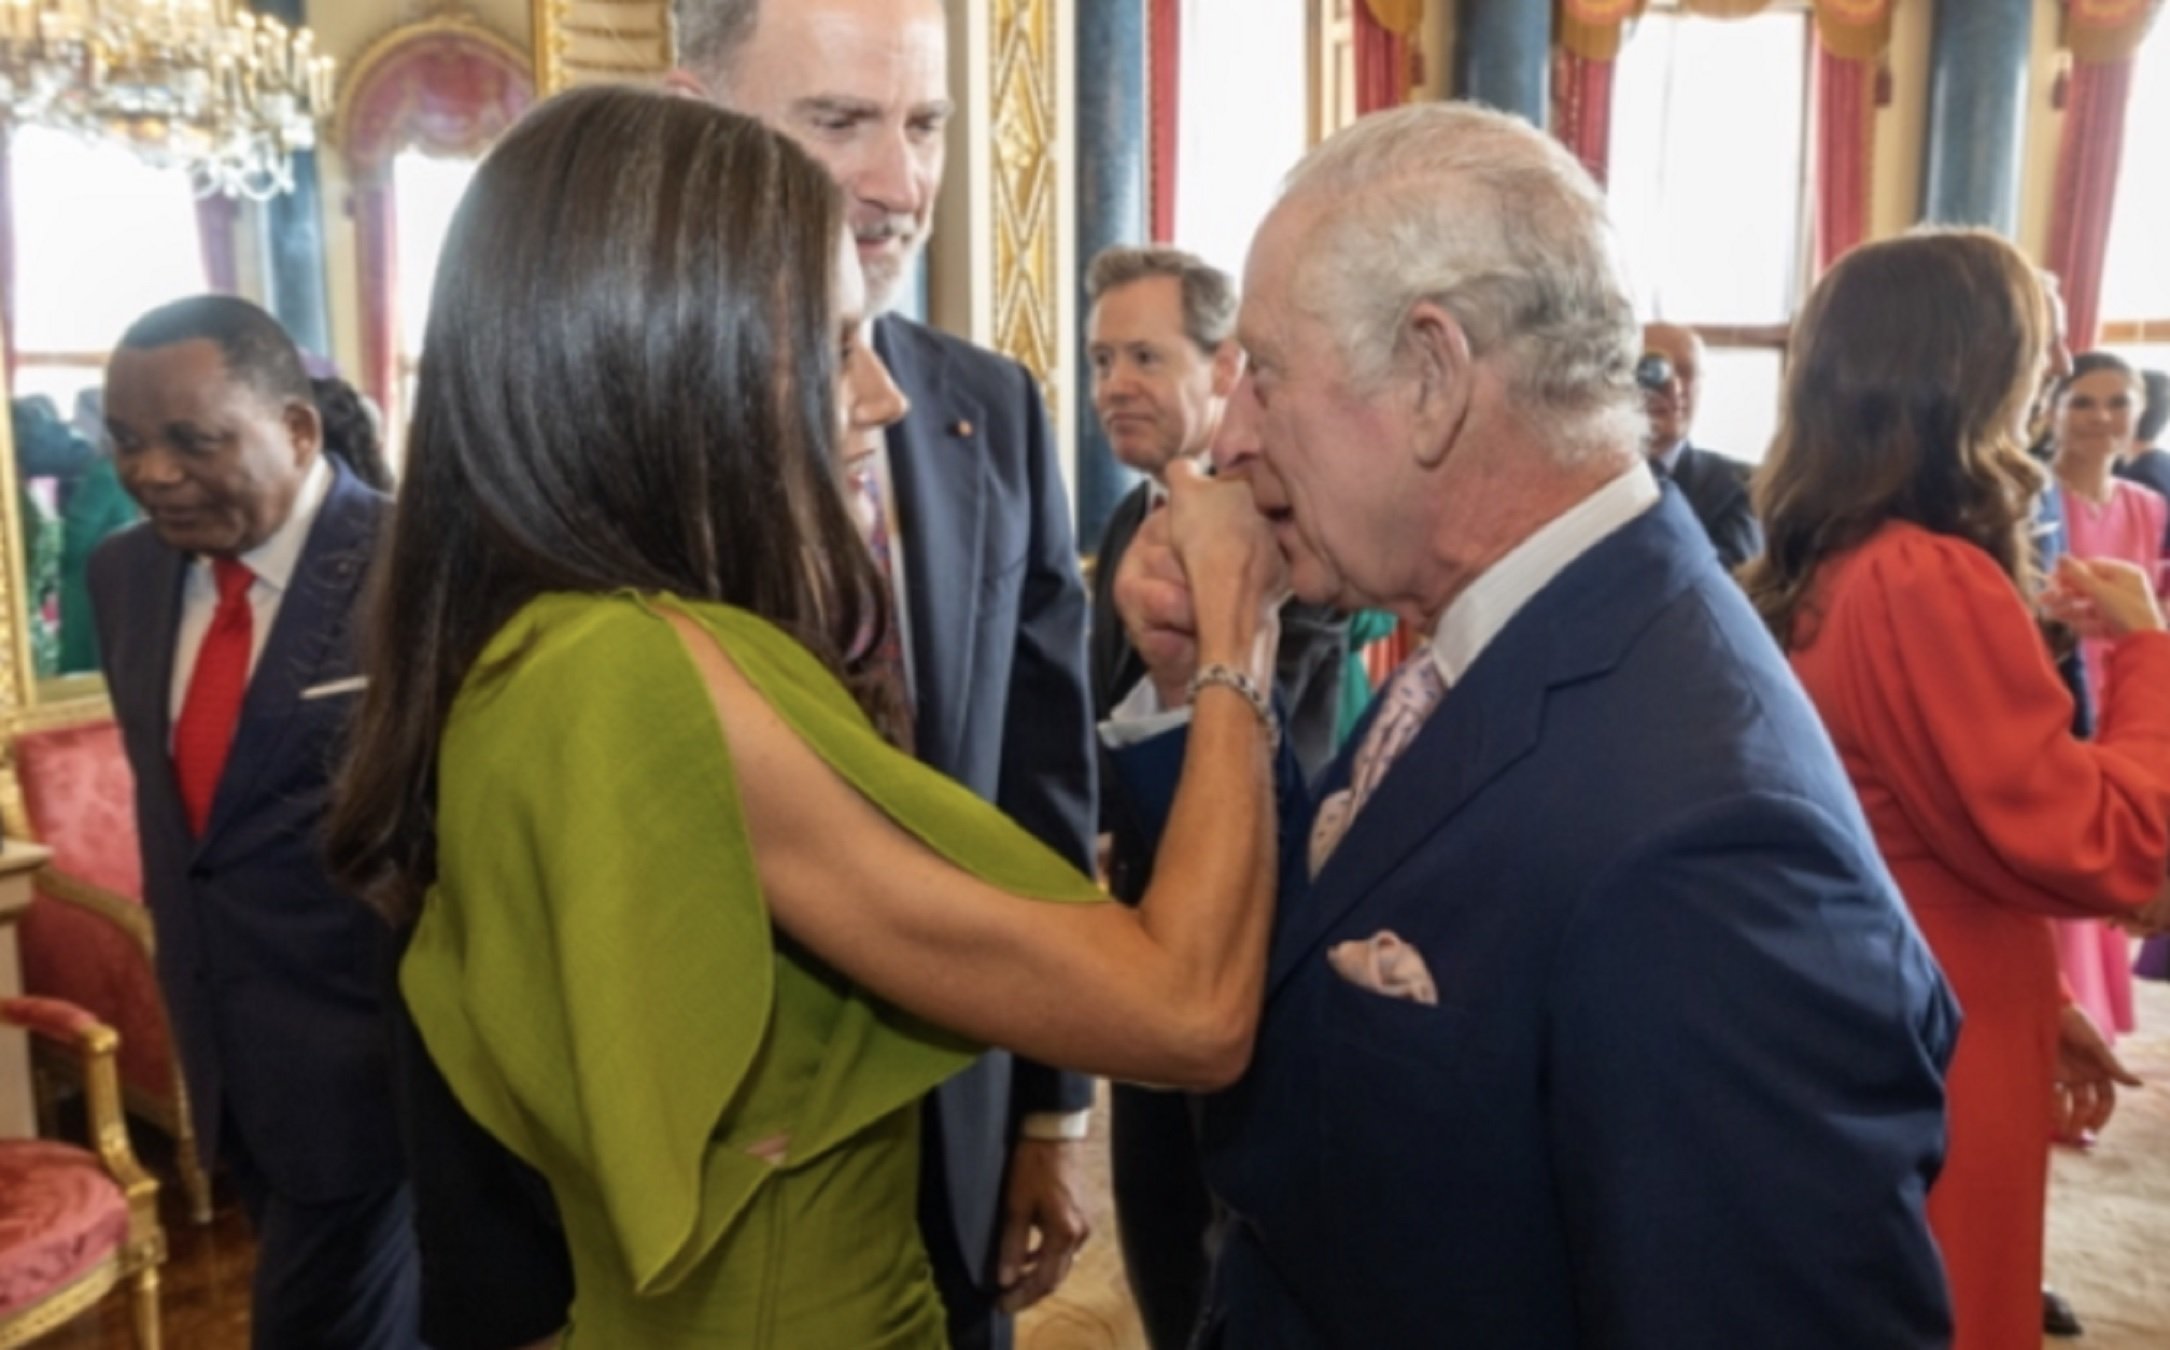 Els convida i se li pixen a la cara: Carles III, objectiu d'un talp, repulsió